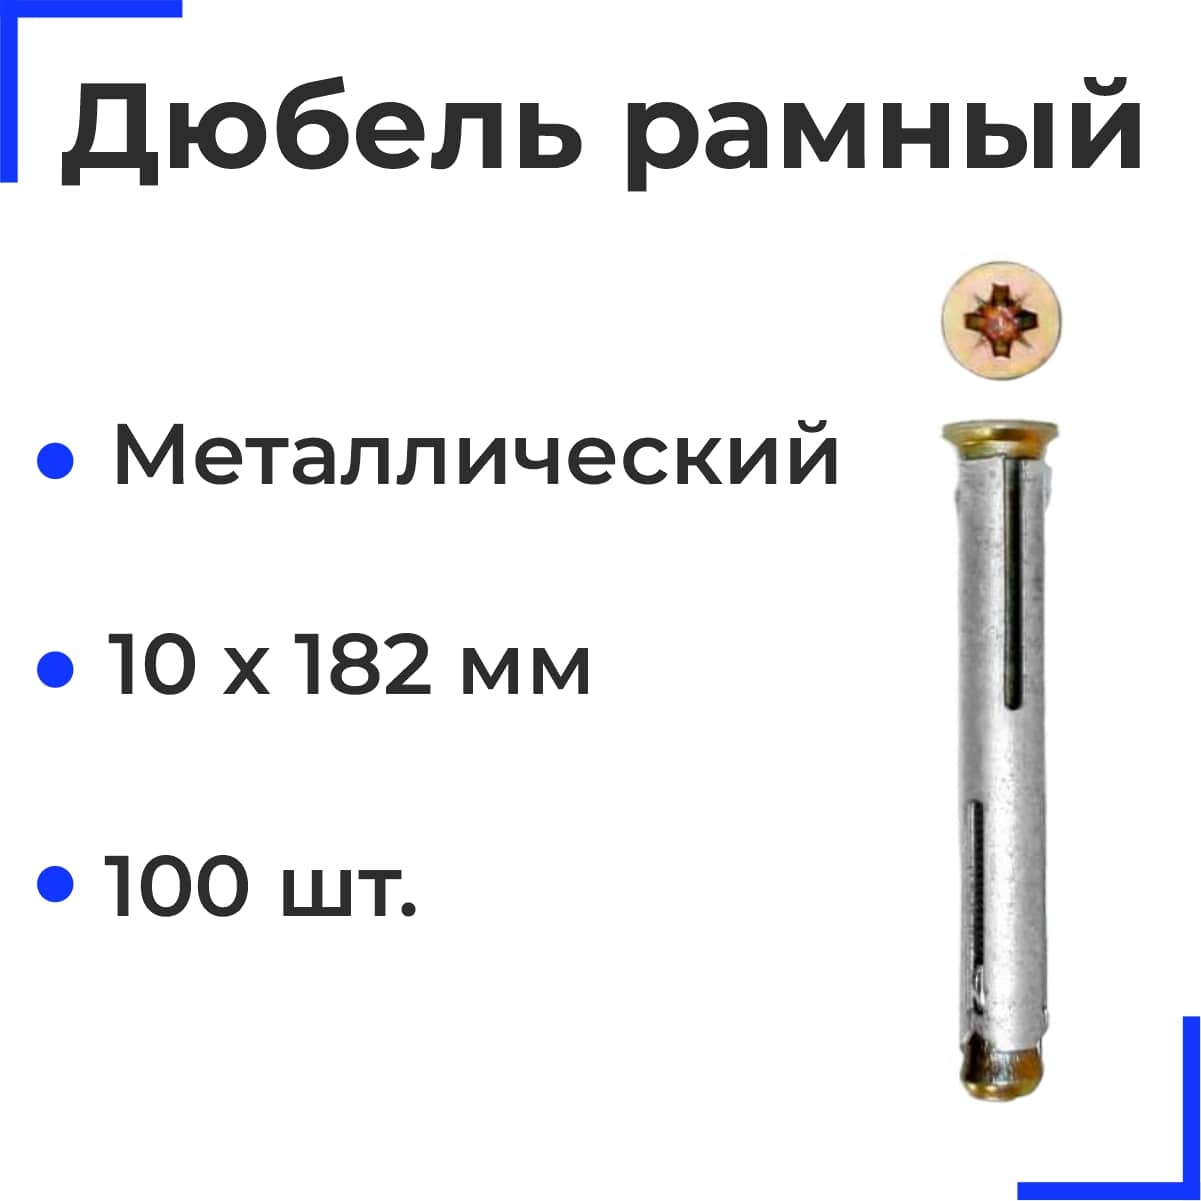 Металлический рамный дюбель 10х182 (100 шт)